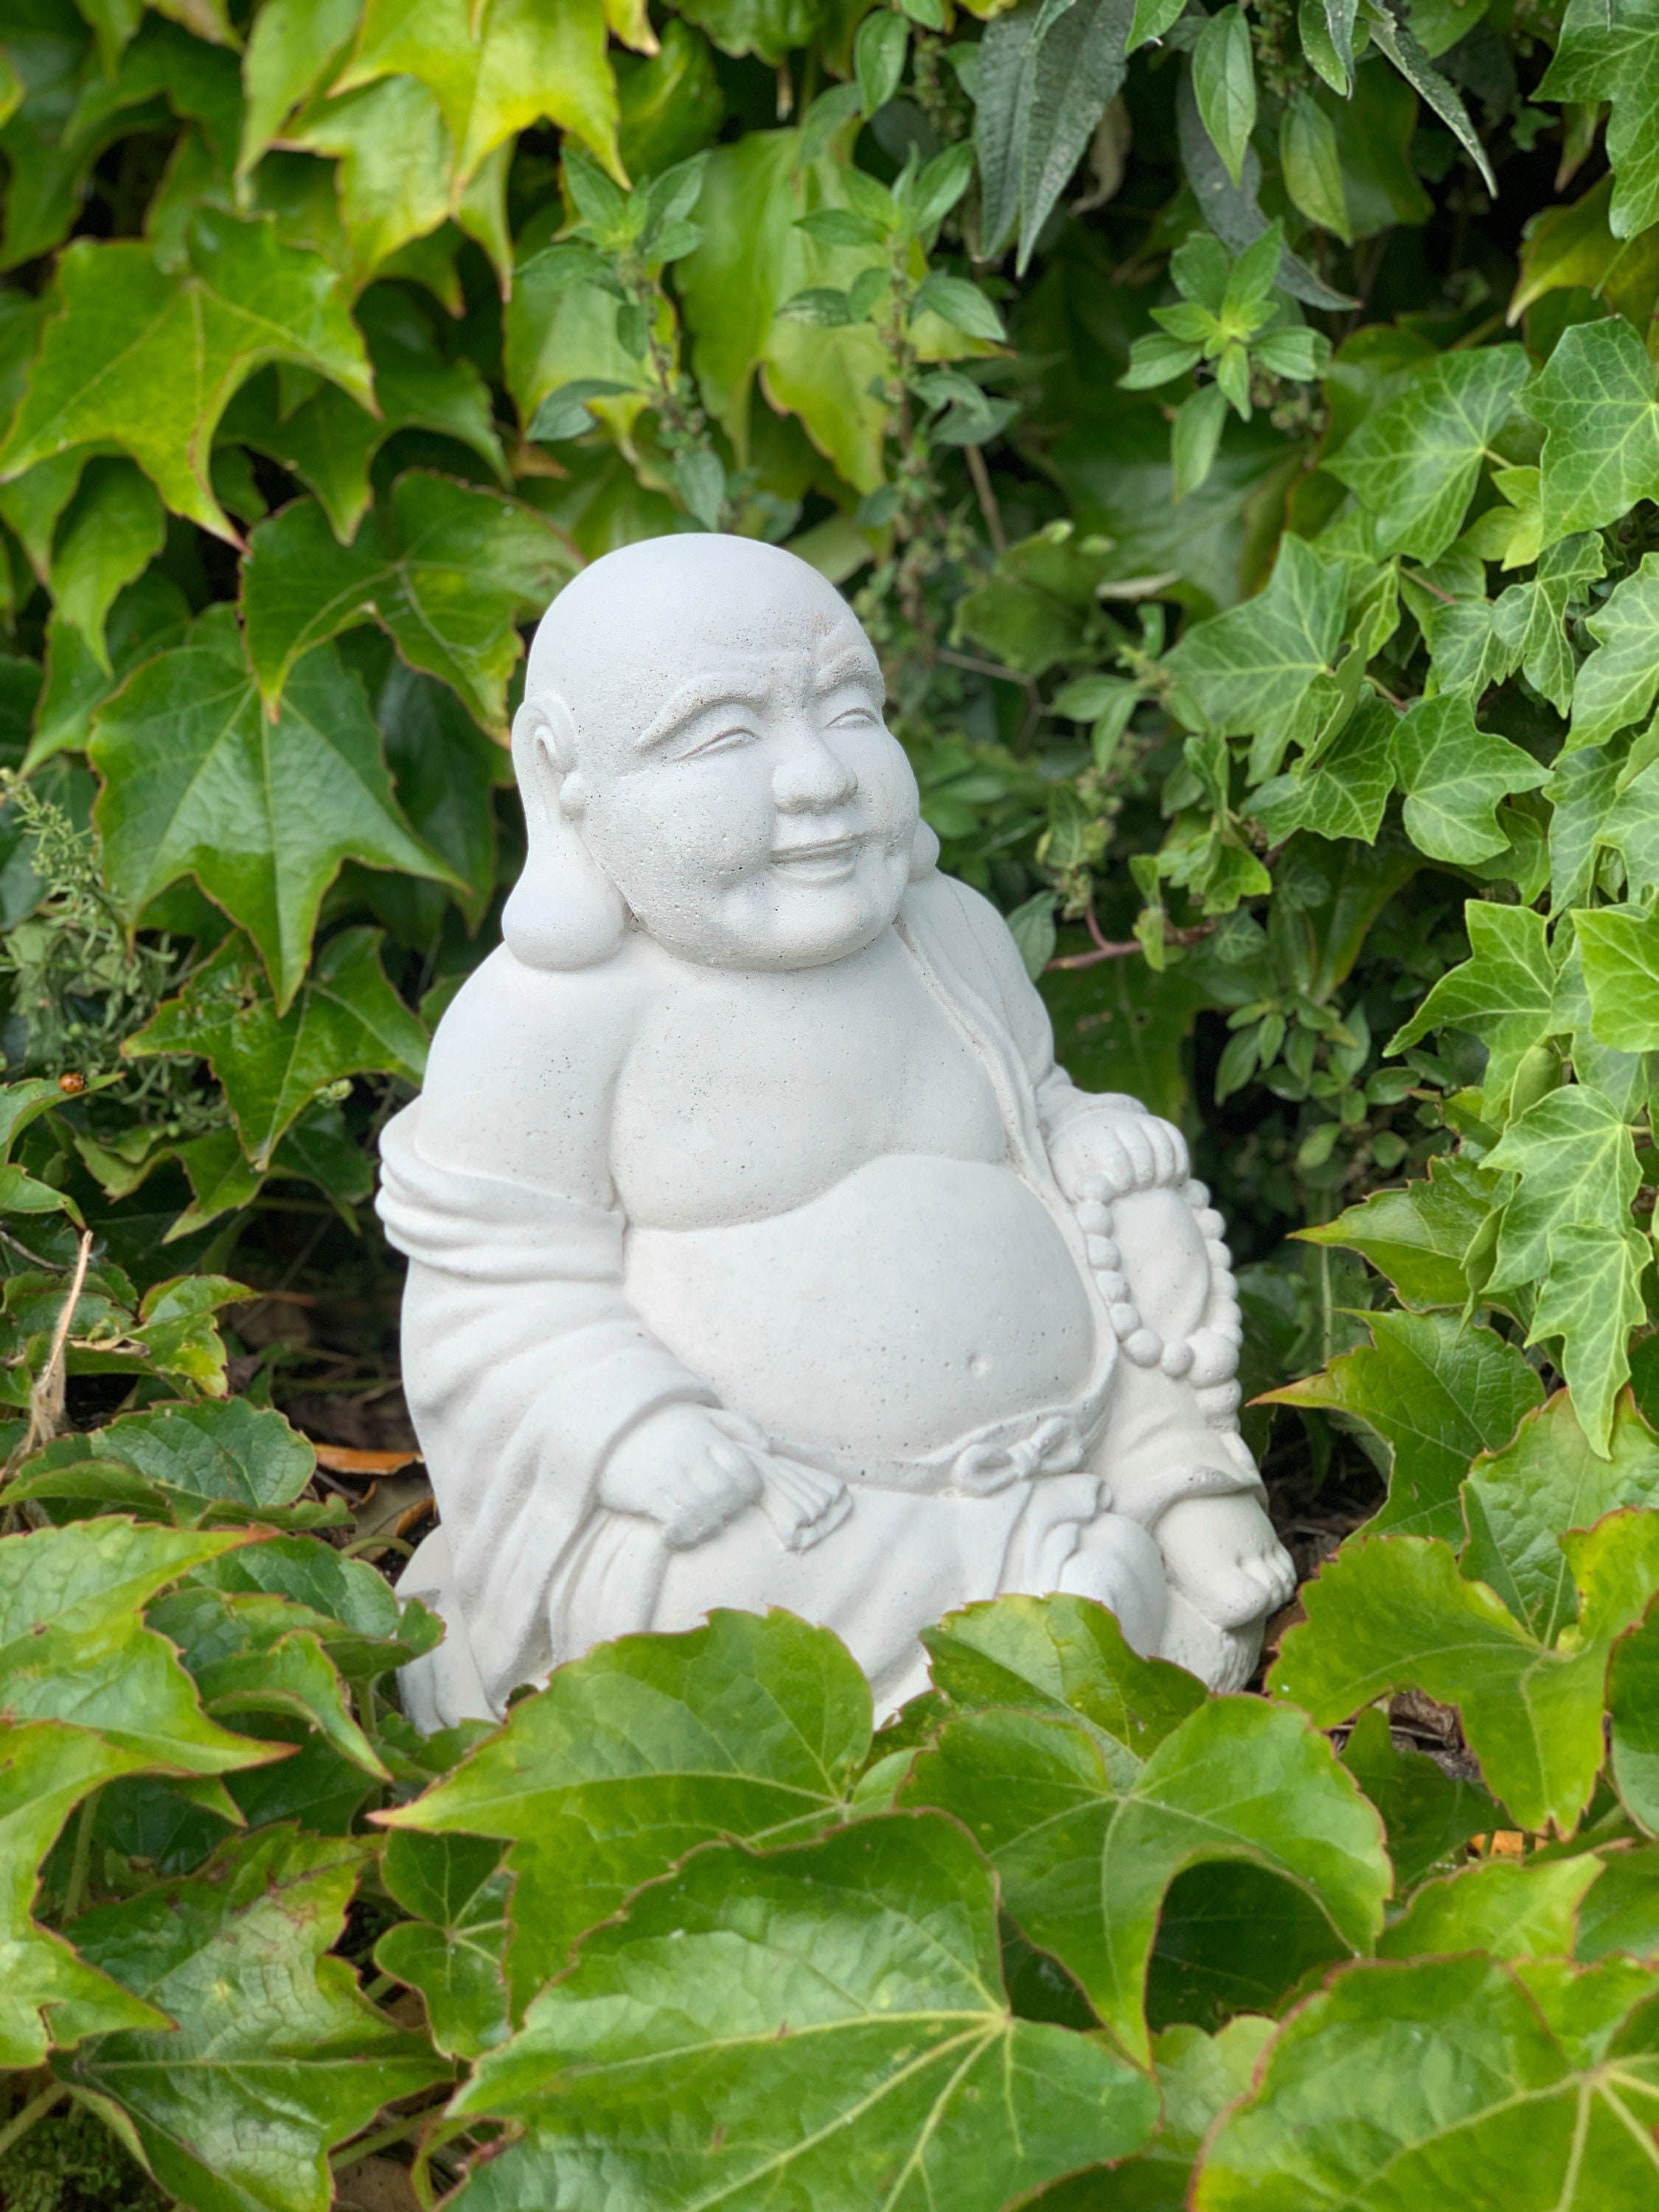 Magnifique statue de Bouddha en bois - Porte bonheur - Grand modèle